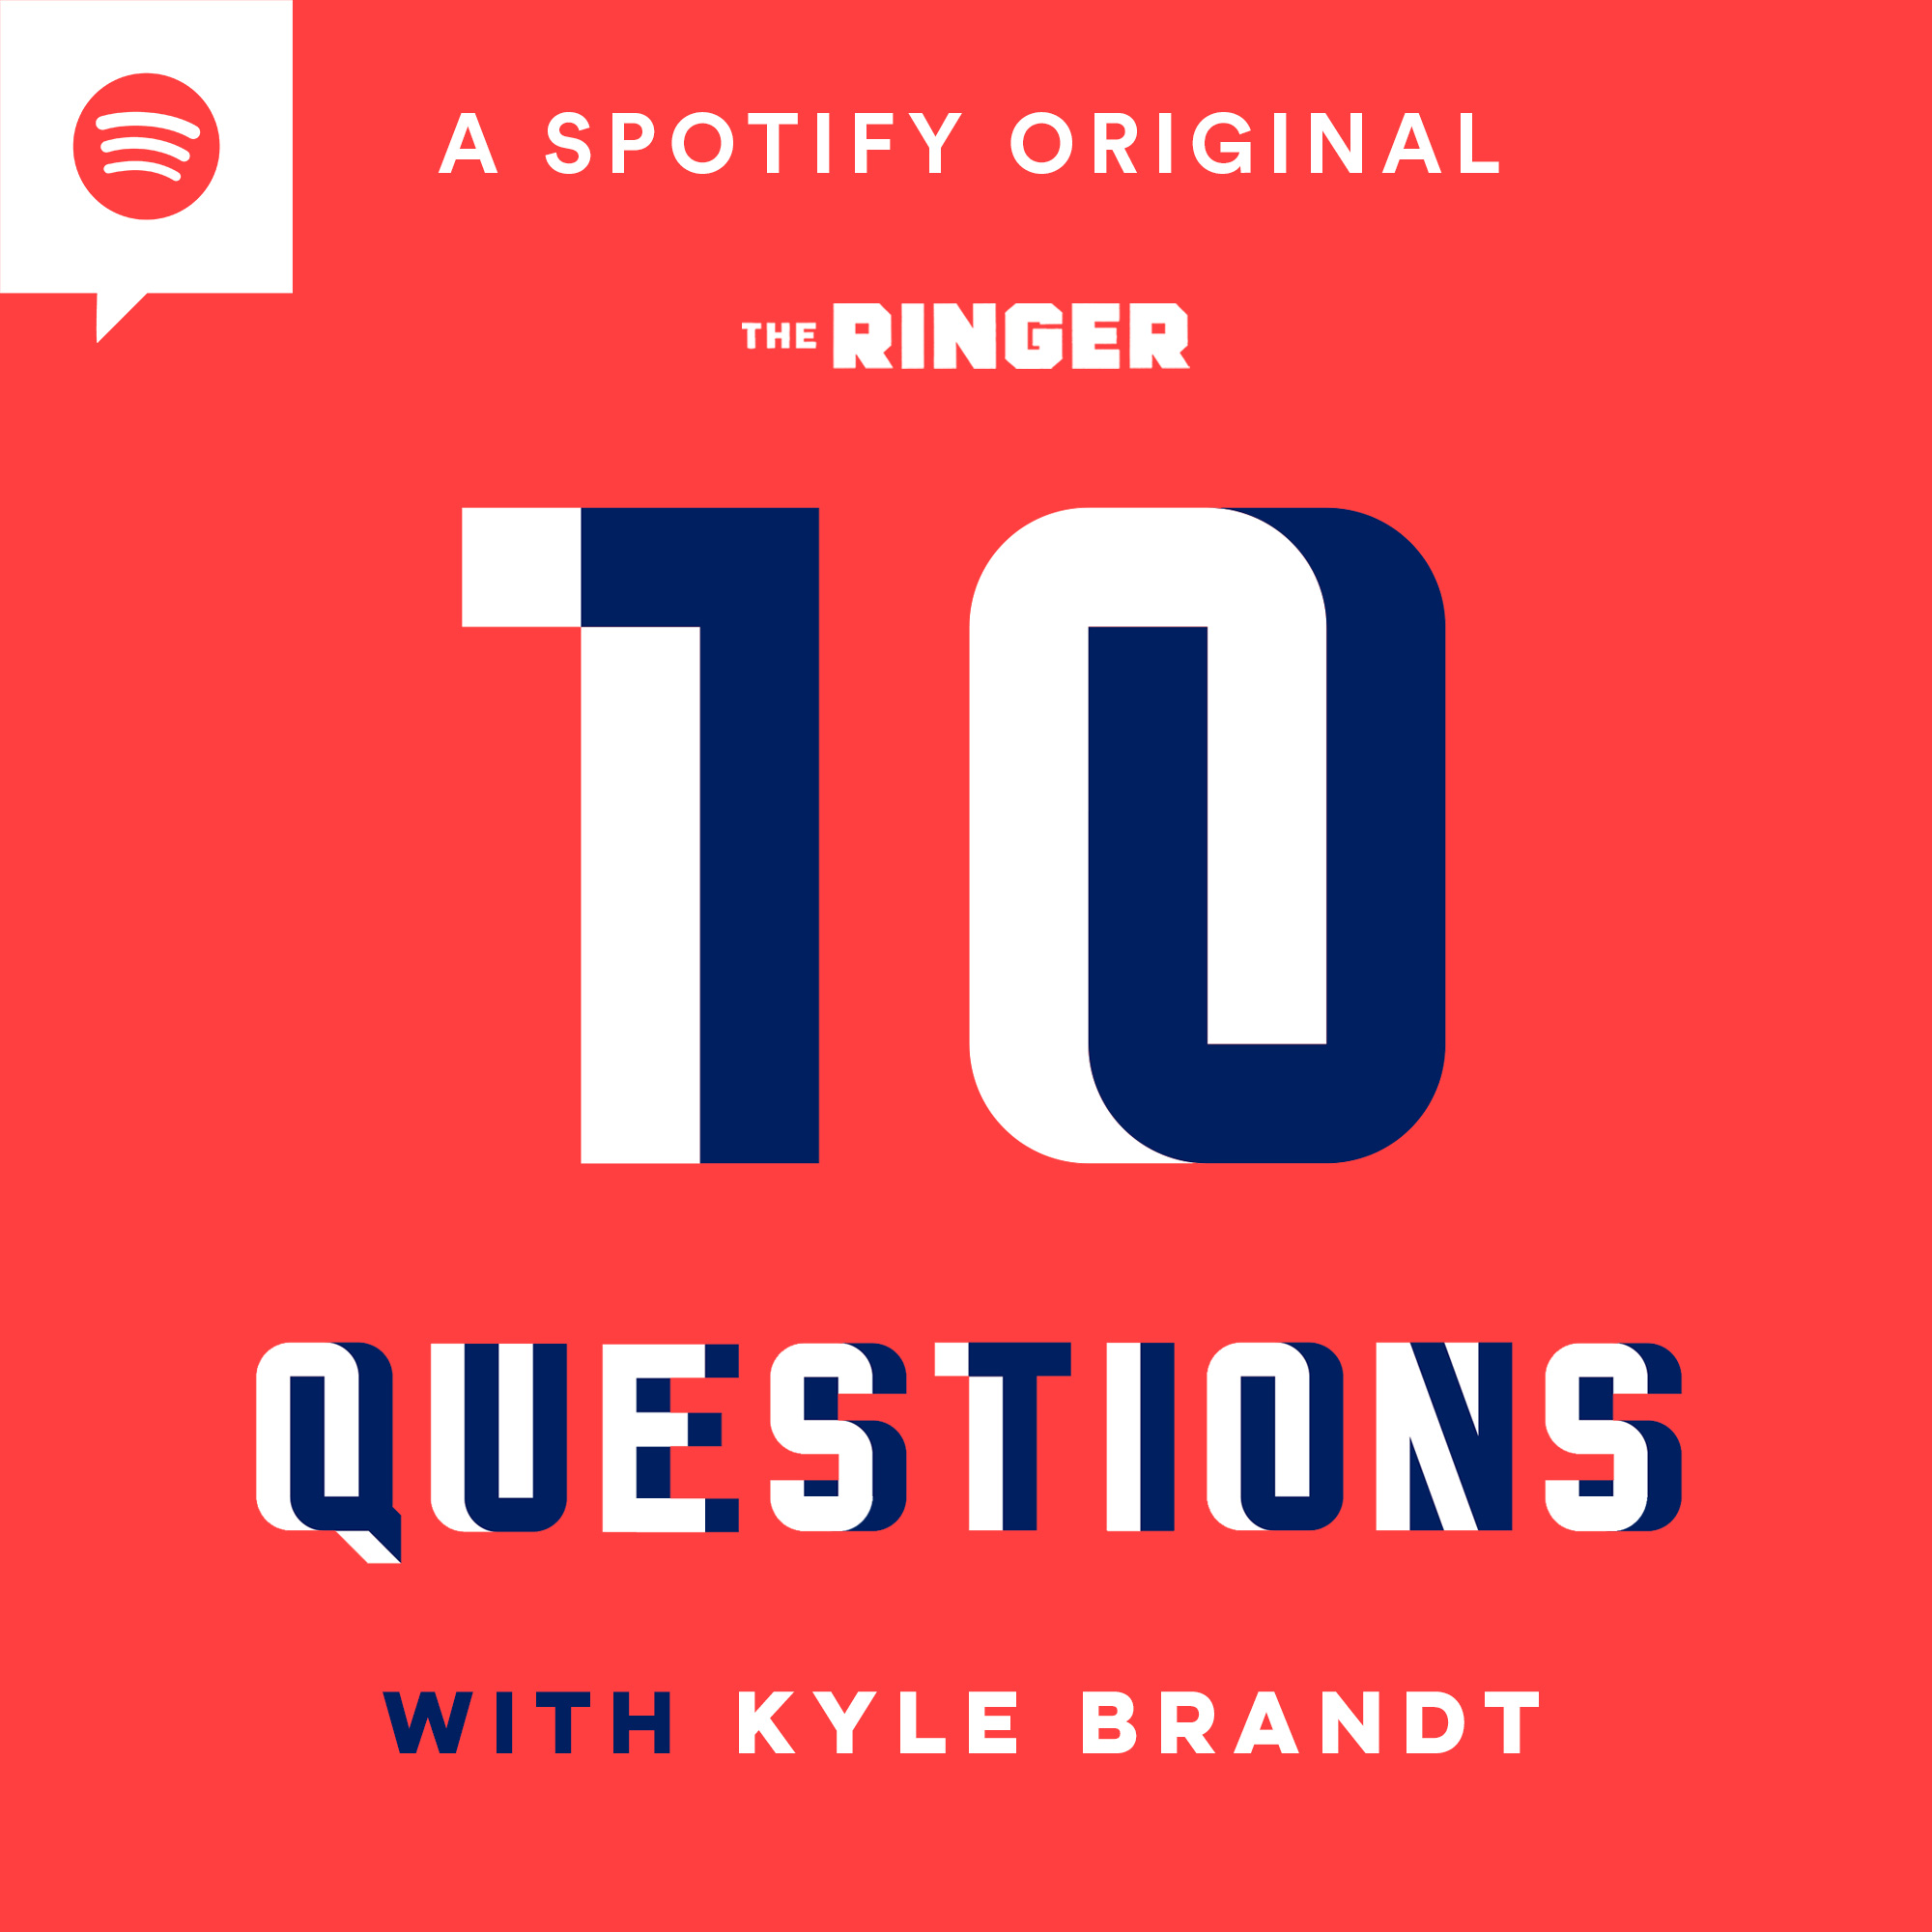 10 questions logo